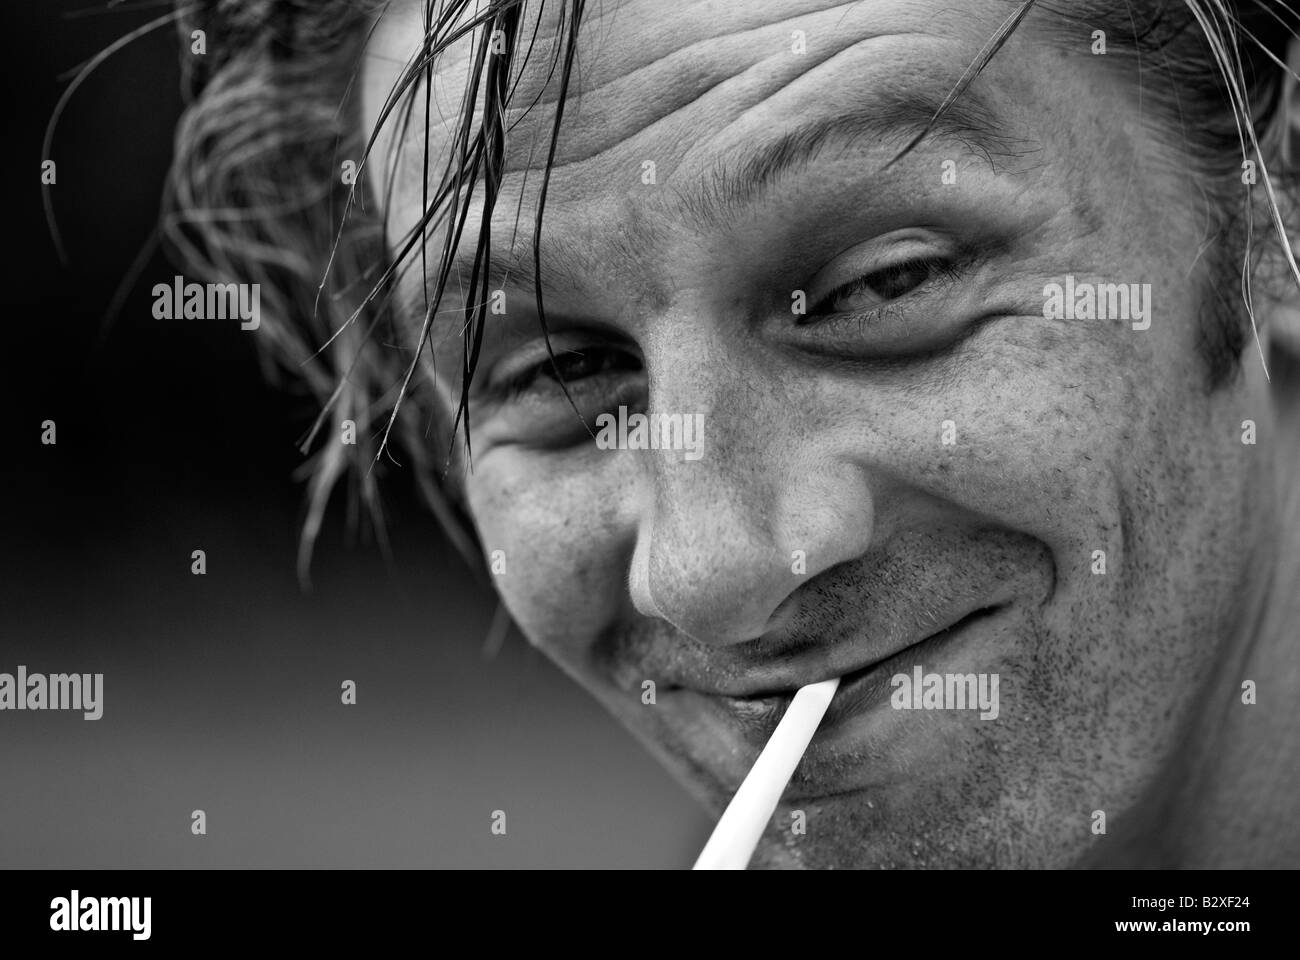 Scruffy man smoking a cigarette Stock Photo